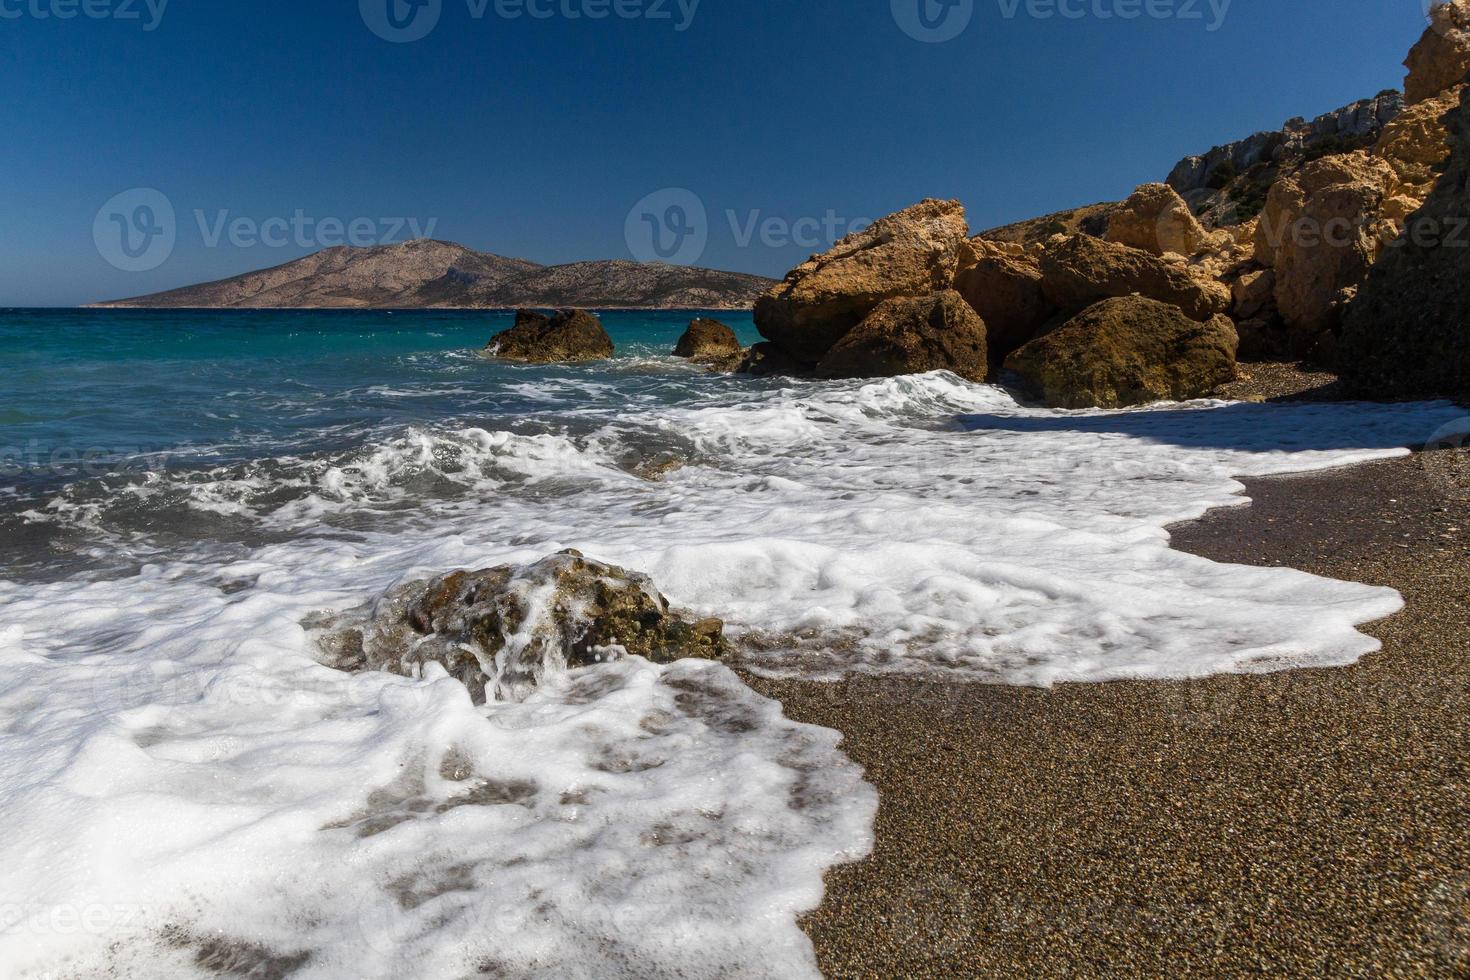 landskap från mikro Kykladerna, grekland foto